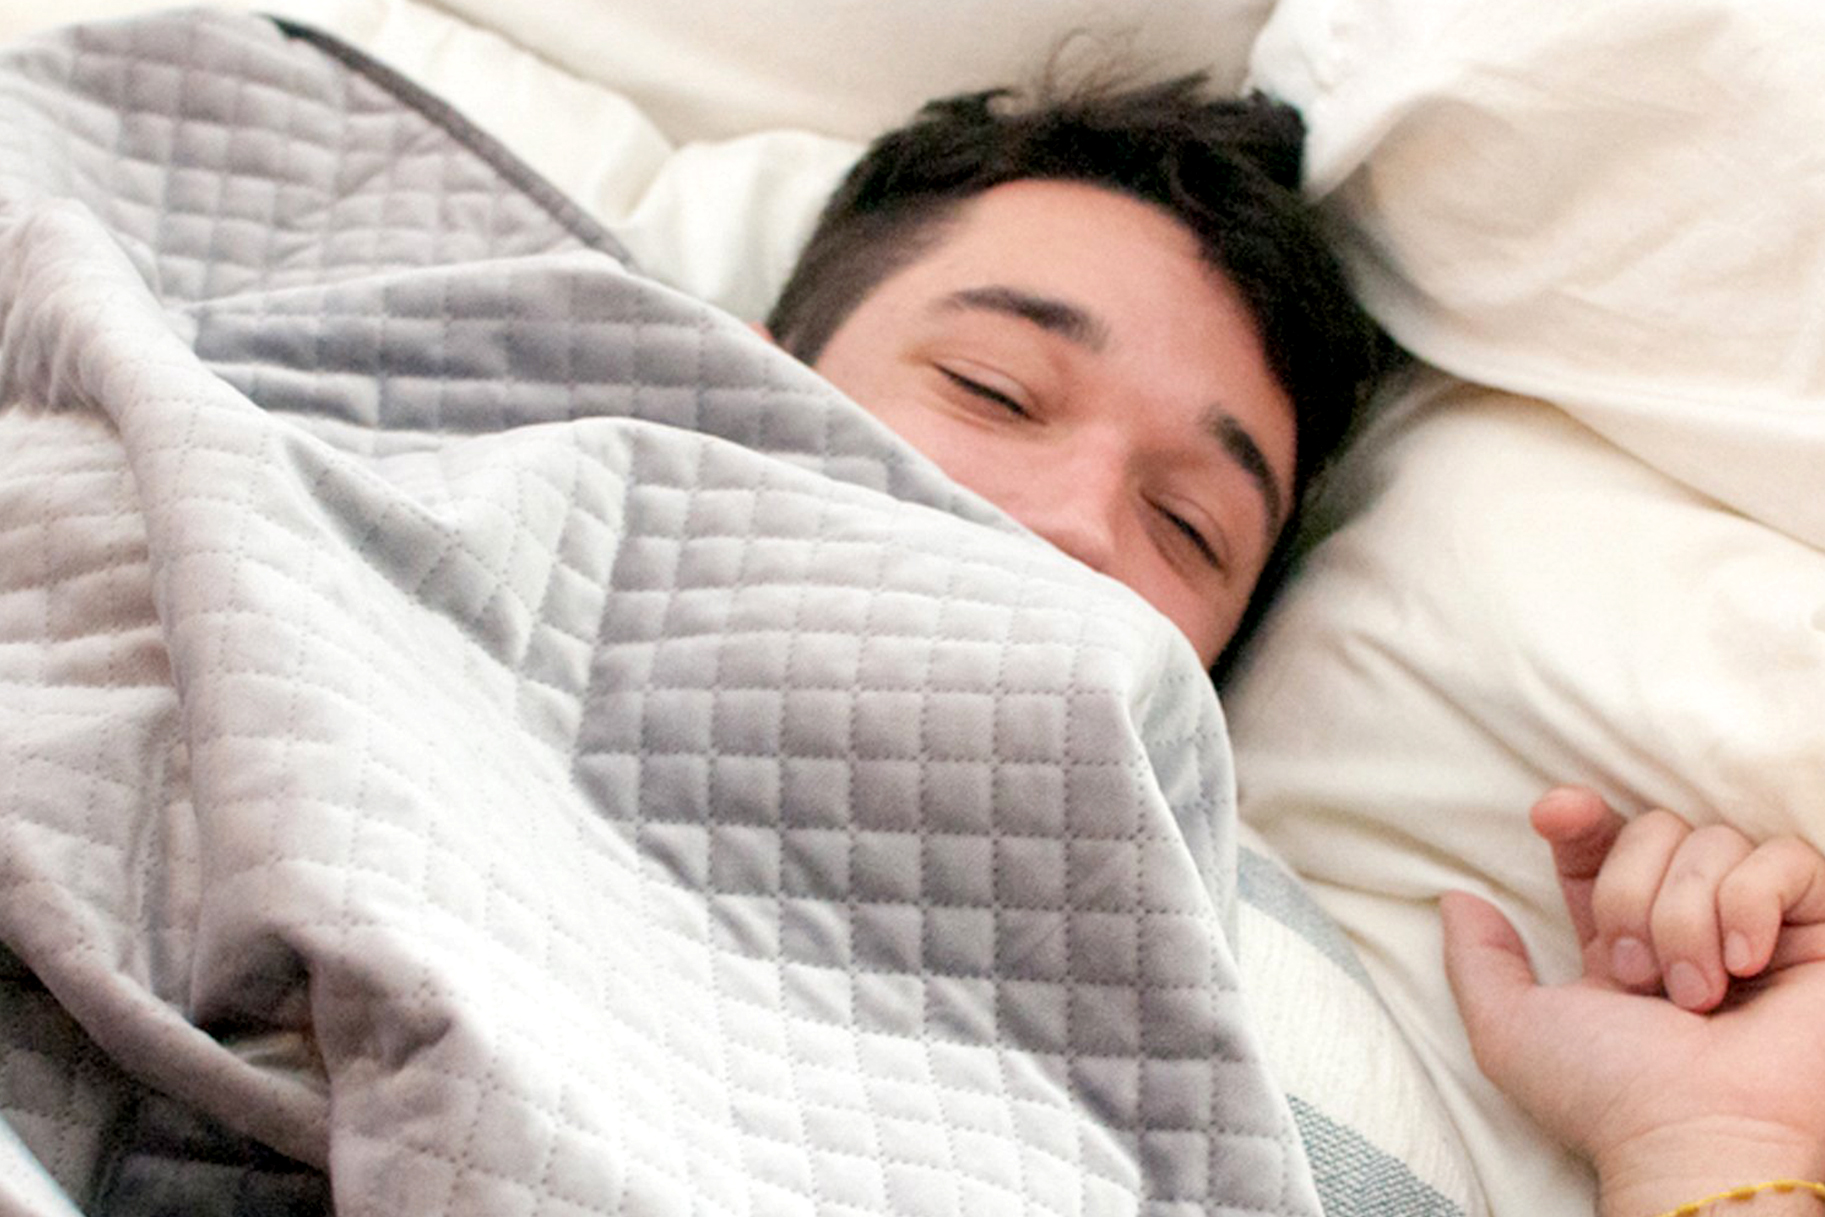 Sunkios antklodės: geresnė miego kokybė